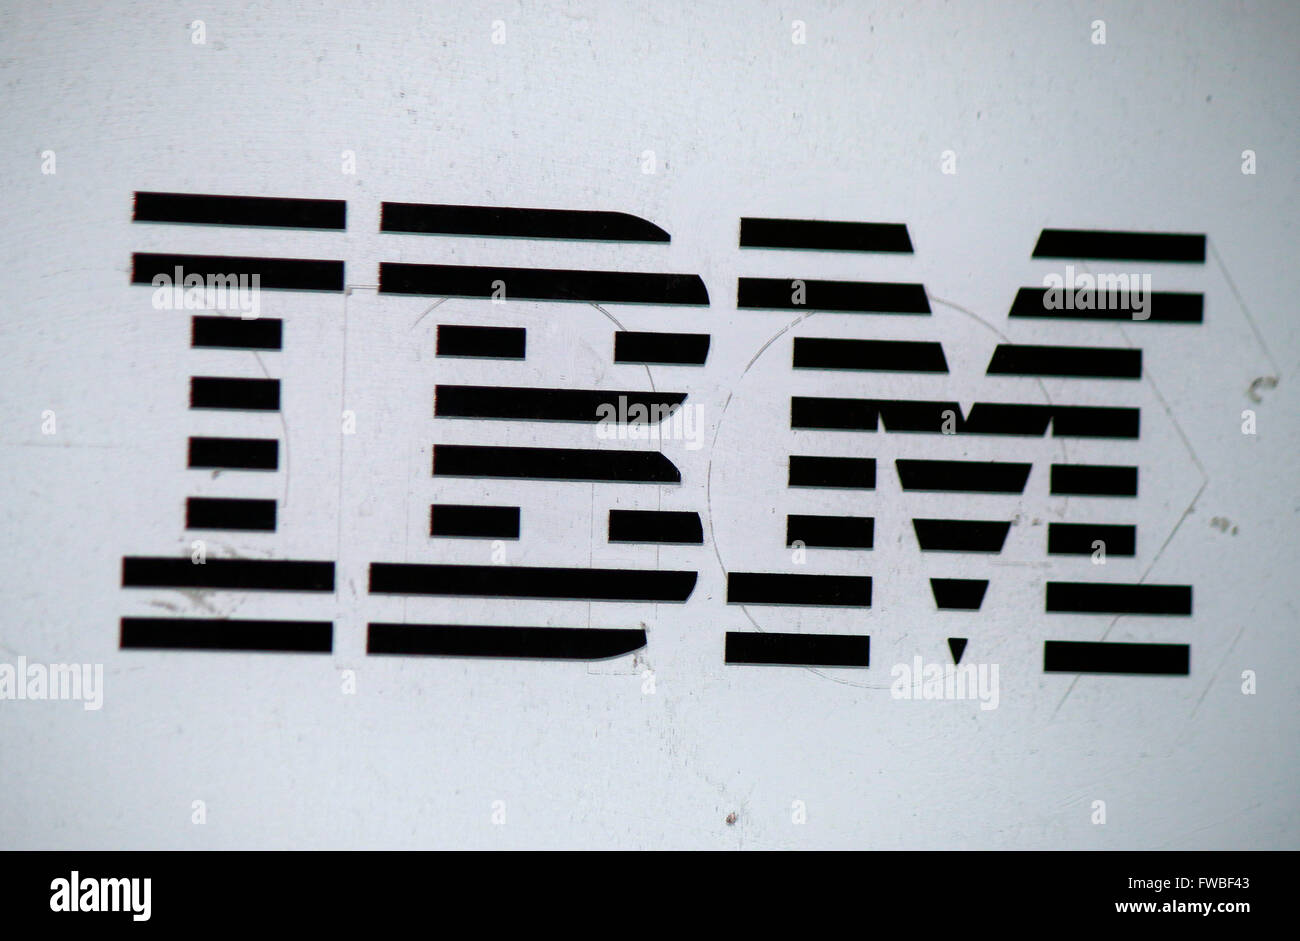 Das Logo der Marke "IBM", Berlino. Foto Stock